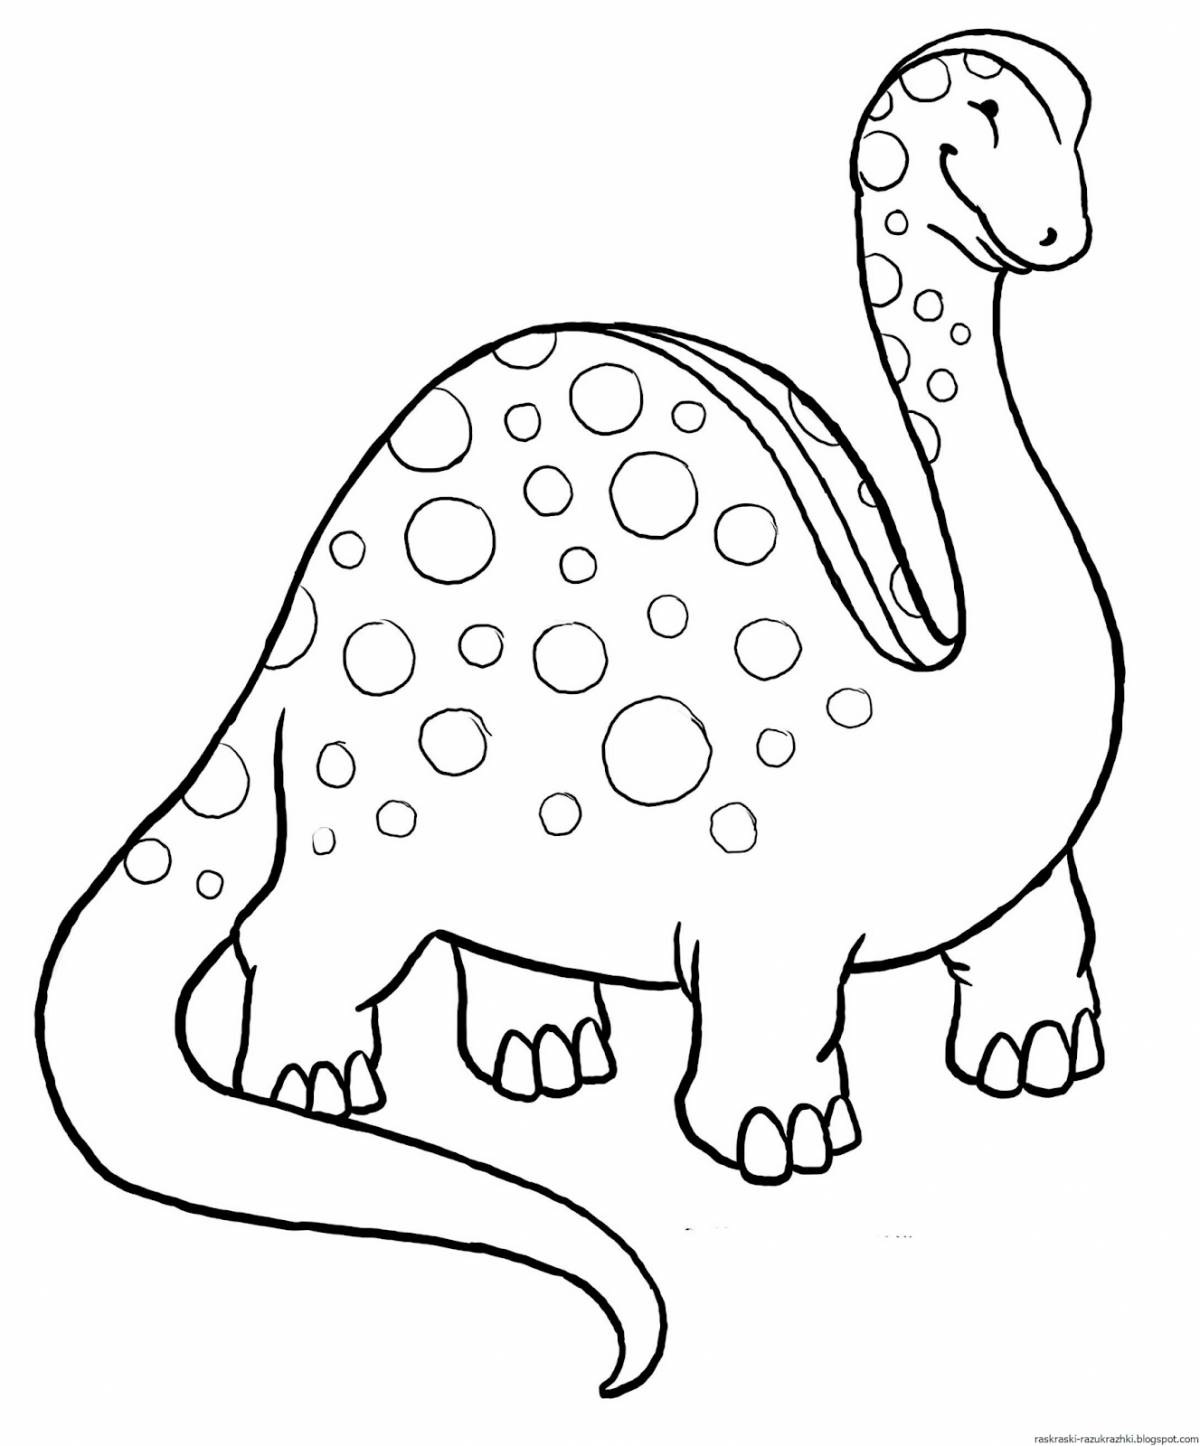 Attractive dinosaur coloring book